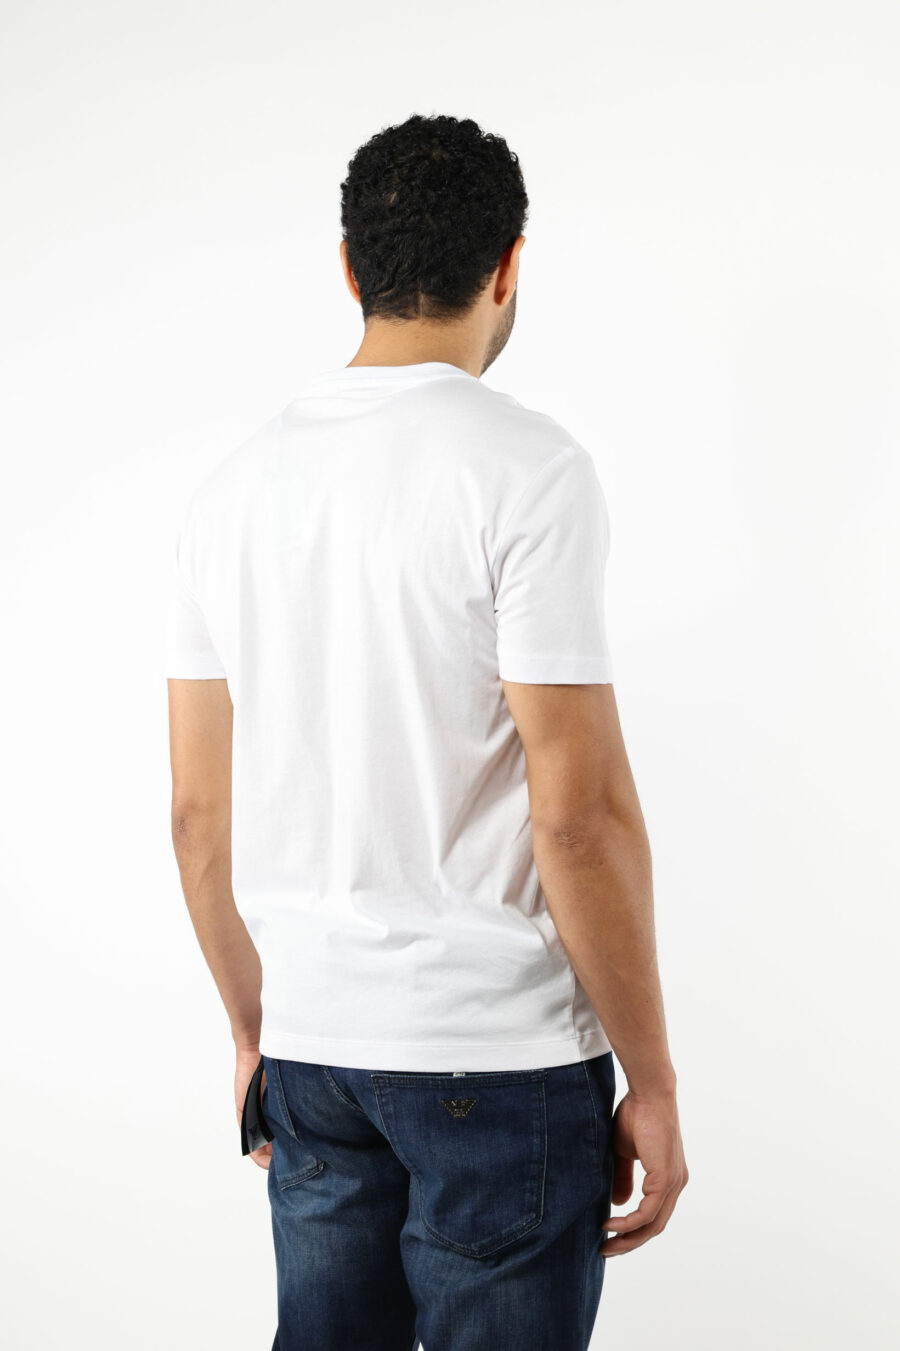 Camiseta blanca con minilogo "lux identity" en placa dorada - 110806